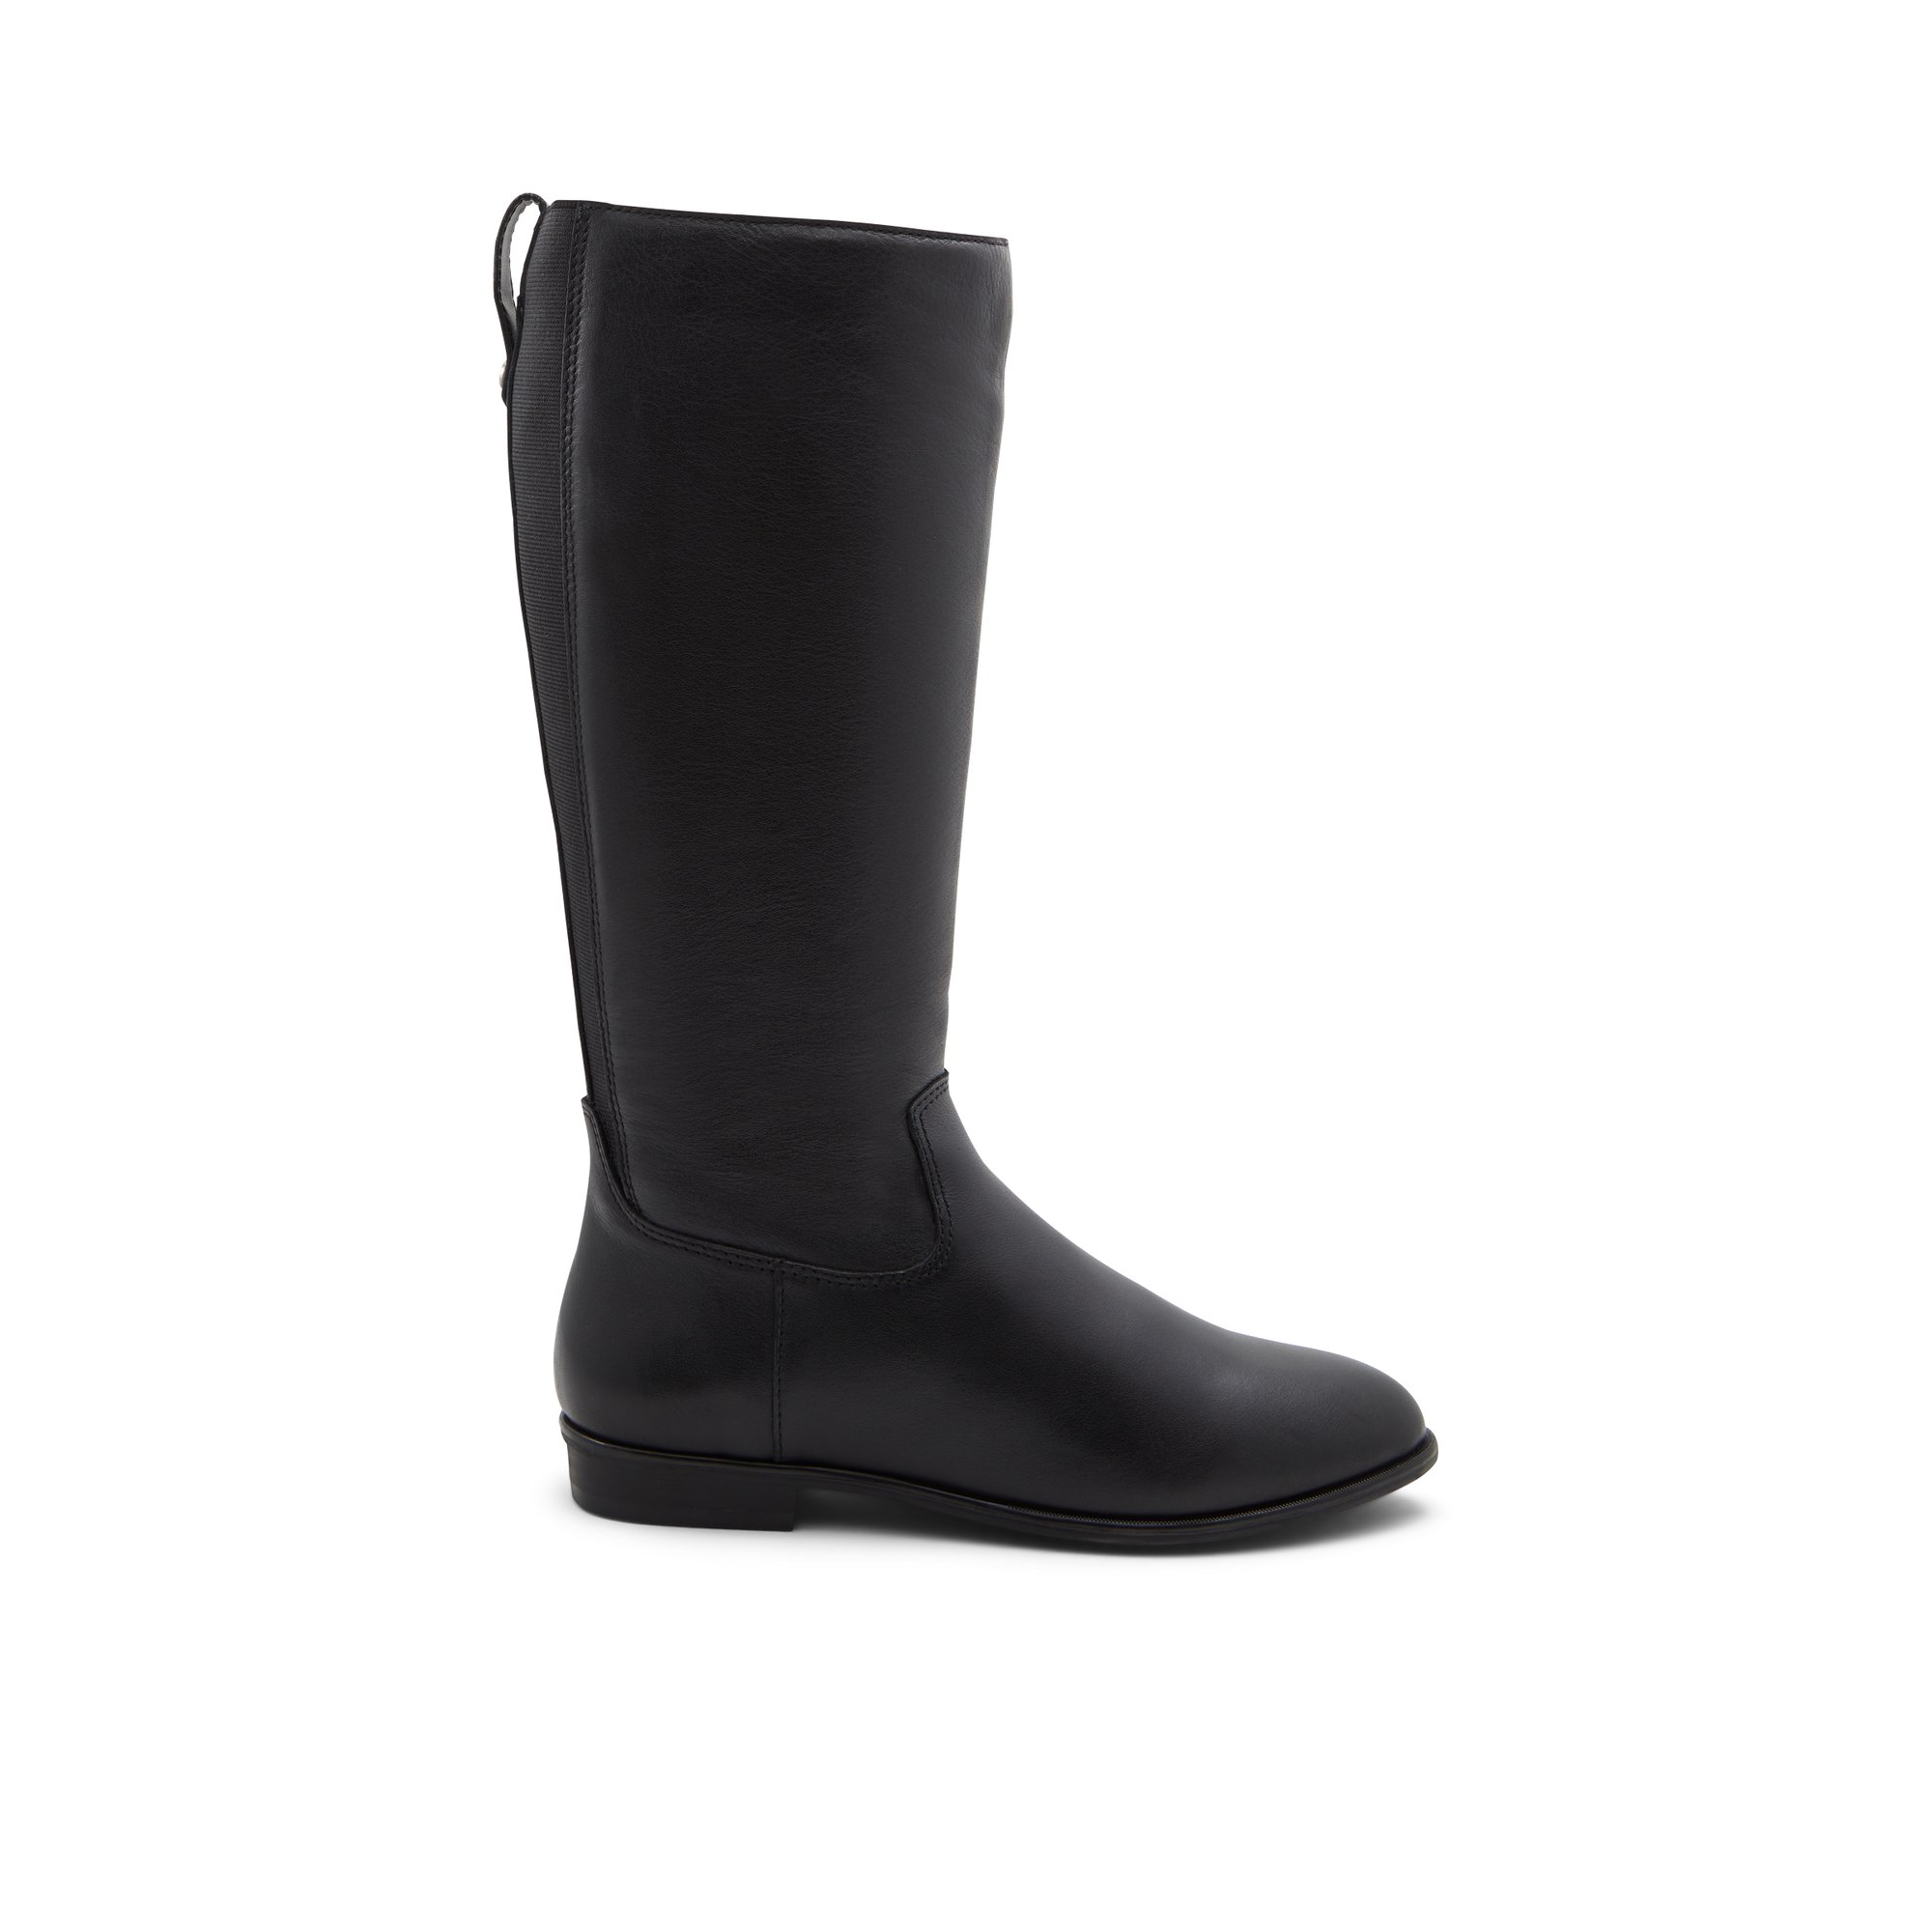 ALDO Riraven - Women's Casual Boot - Black